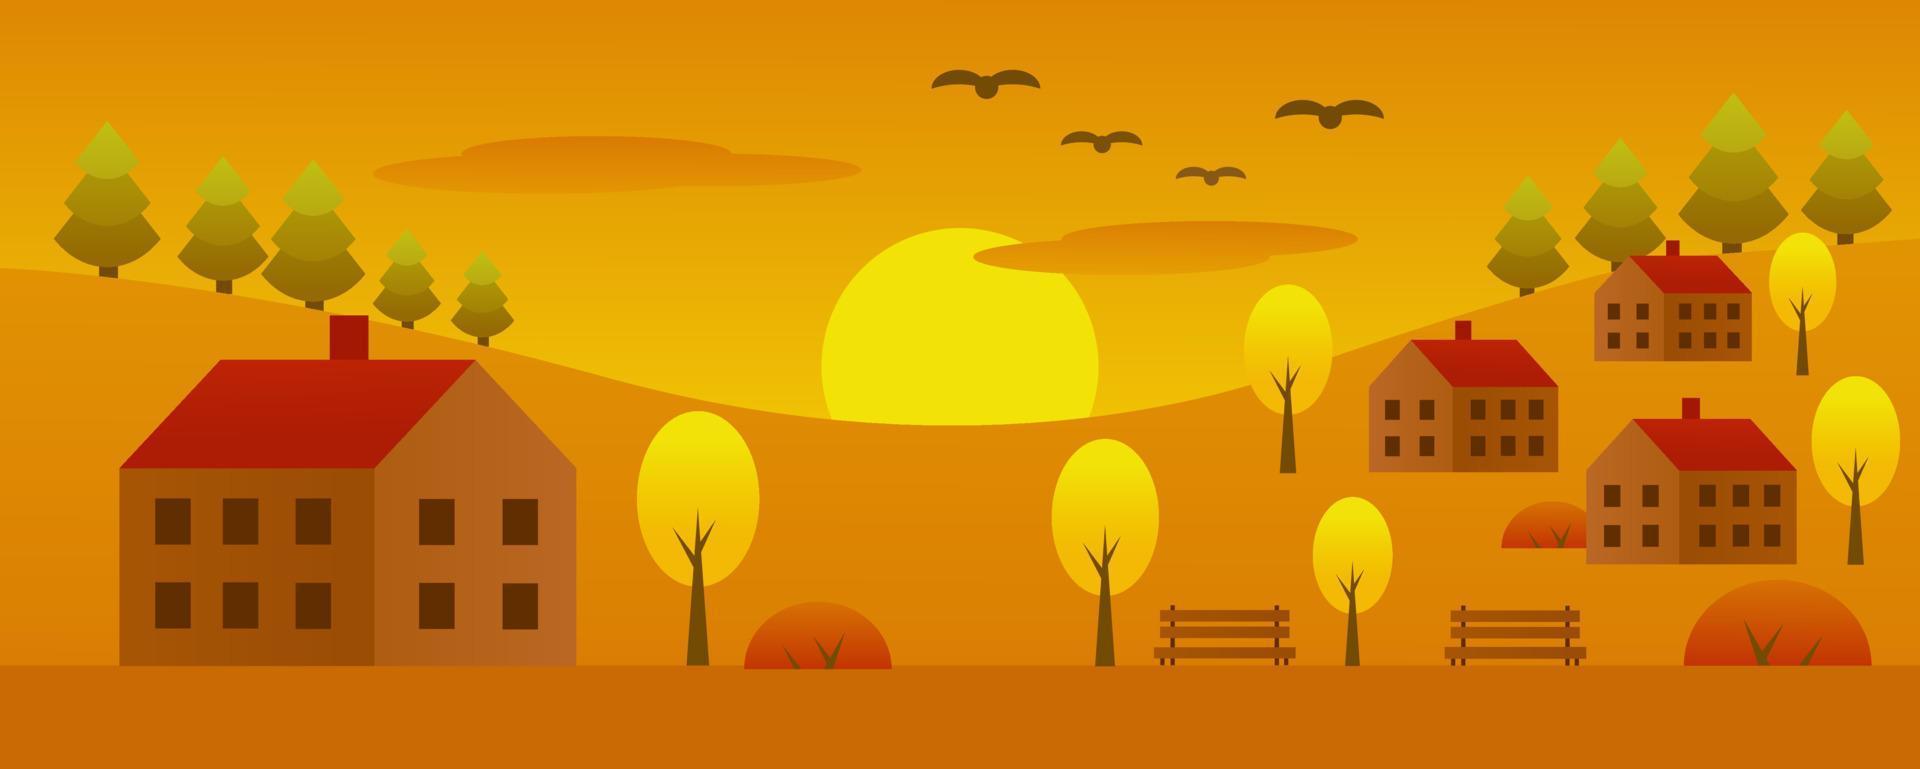 otoño. pueblo de otoño. casas, árboles, bancos. imagen en tonos amarillos. ilustración vectorial de dibujos animados. vector